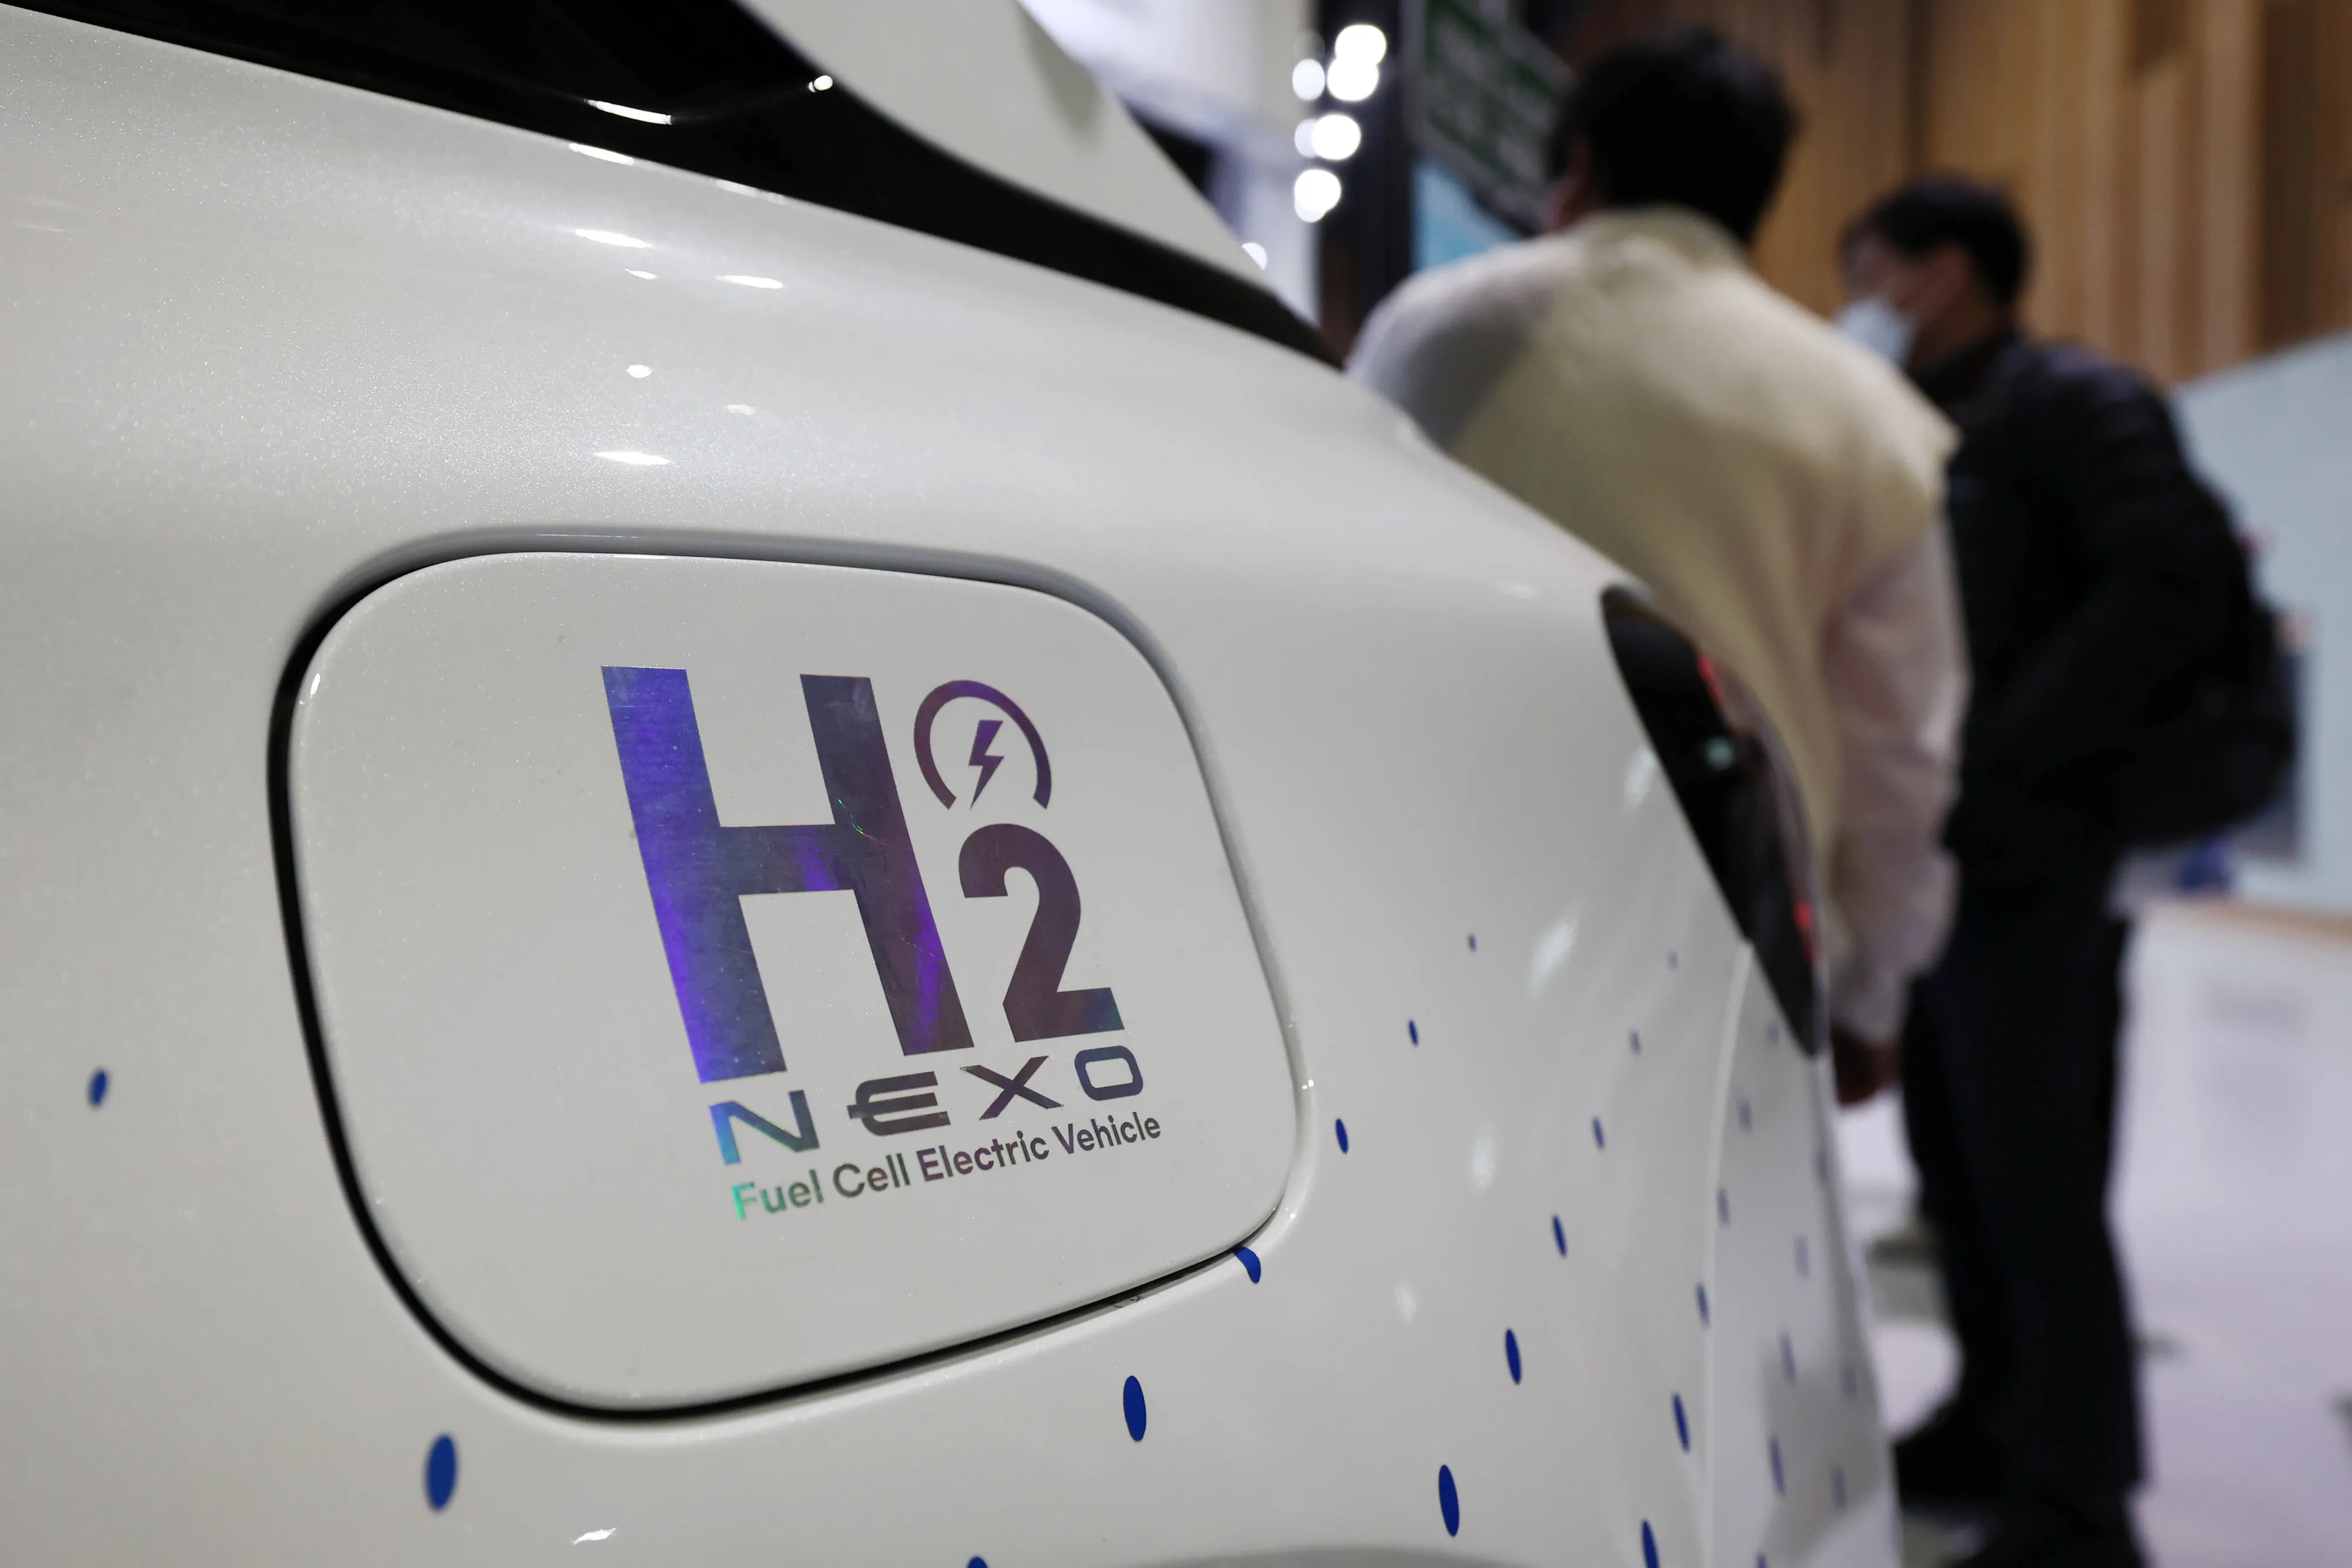 Fórmula química para hidrogênio é exibida na tampa do tanque de combustível de um veículo Hyundai.